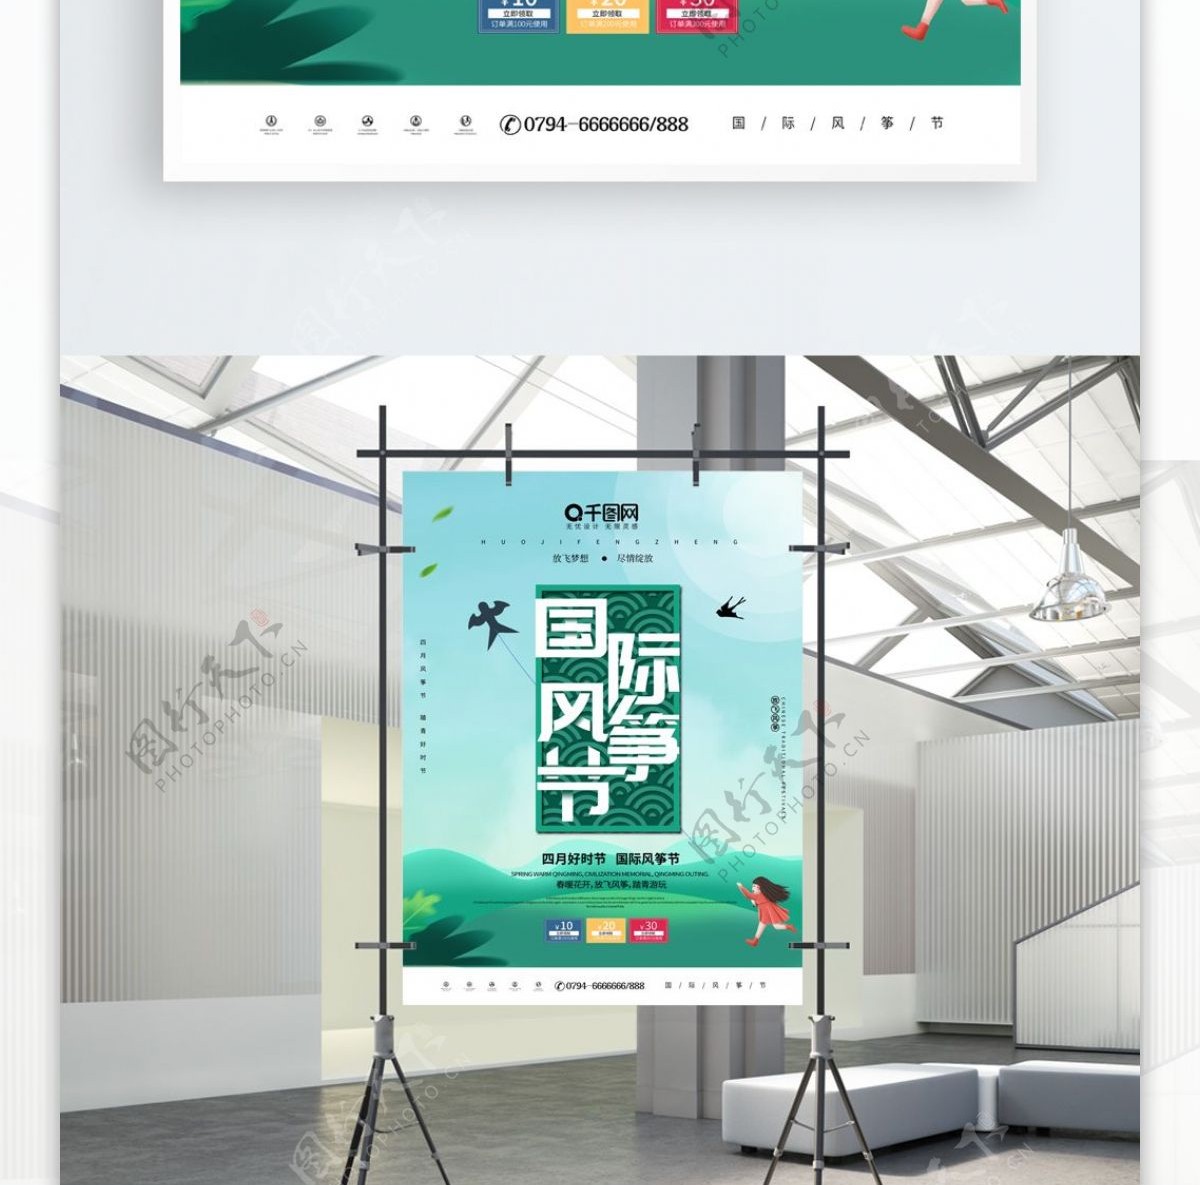 简约清新国际风筝节节日海报